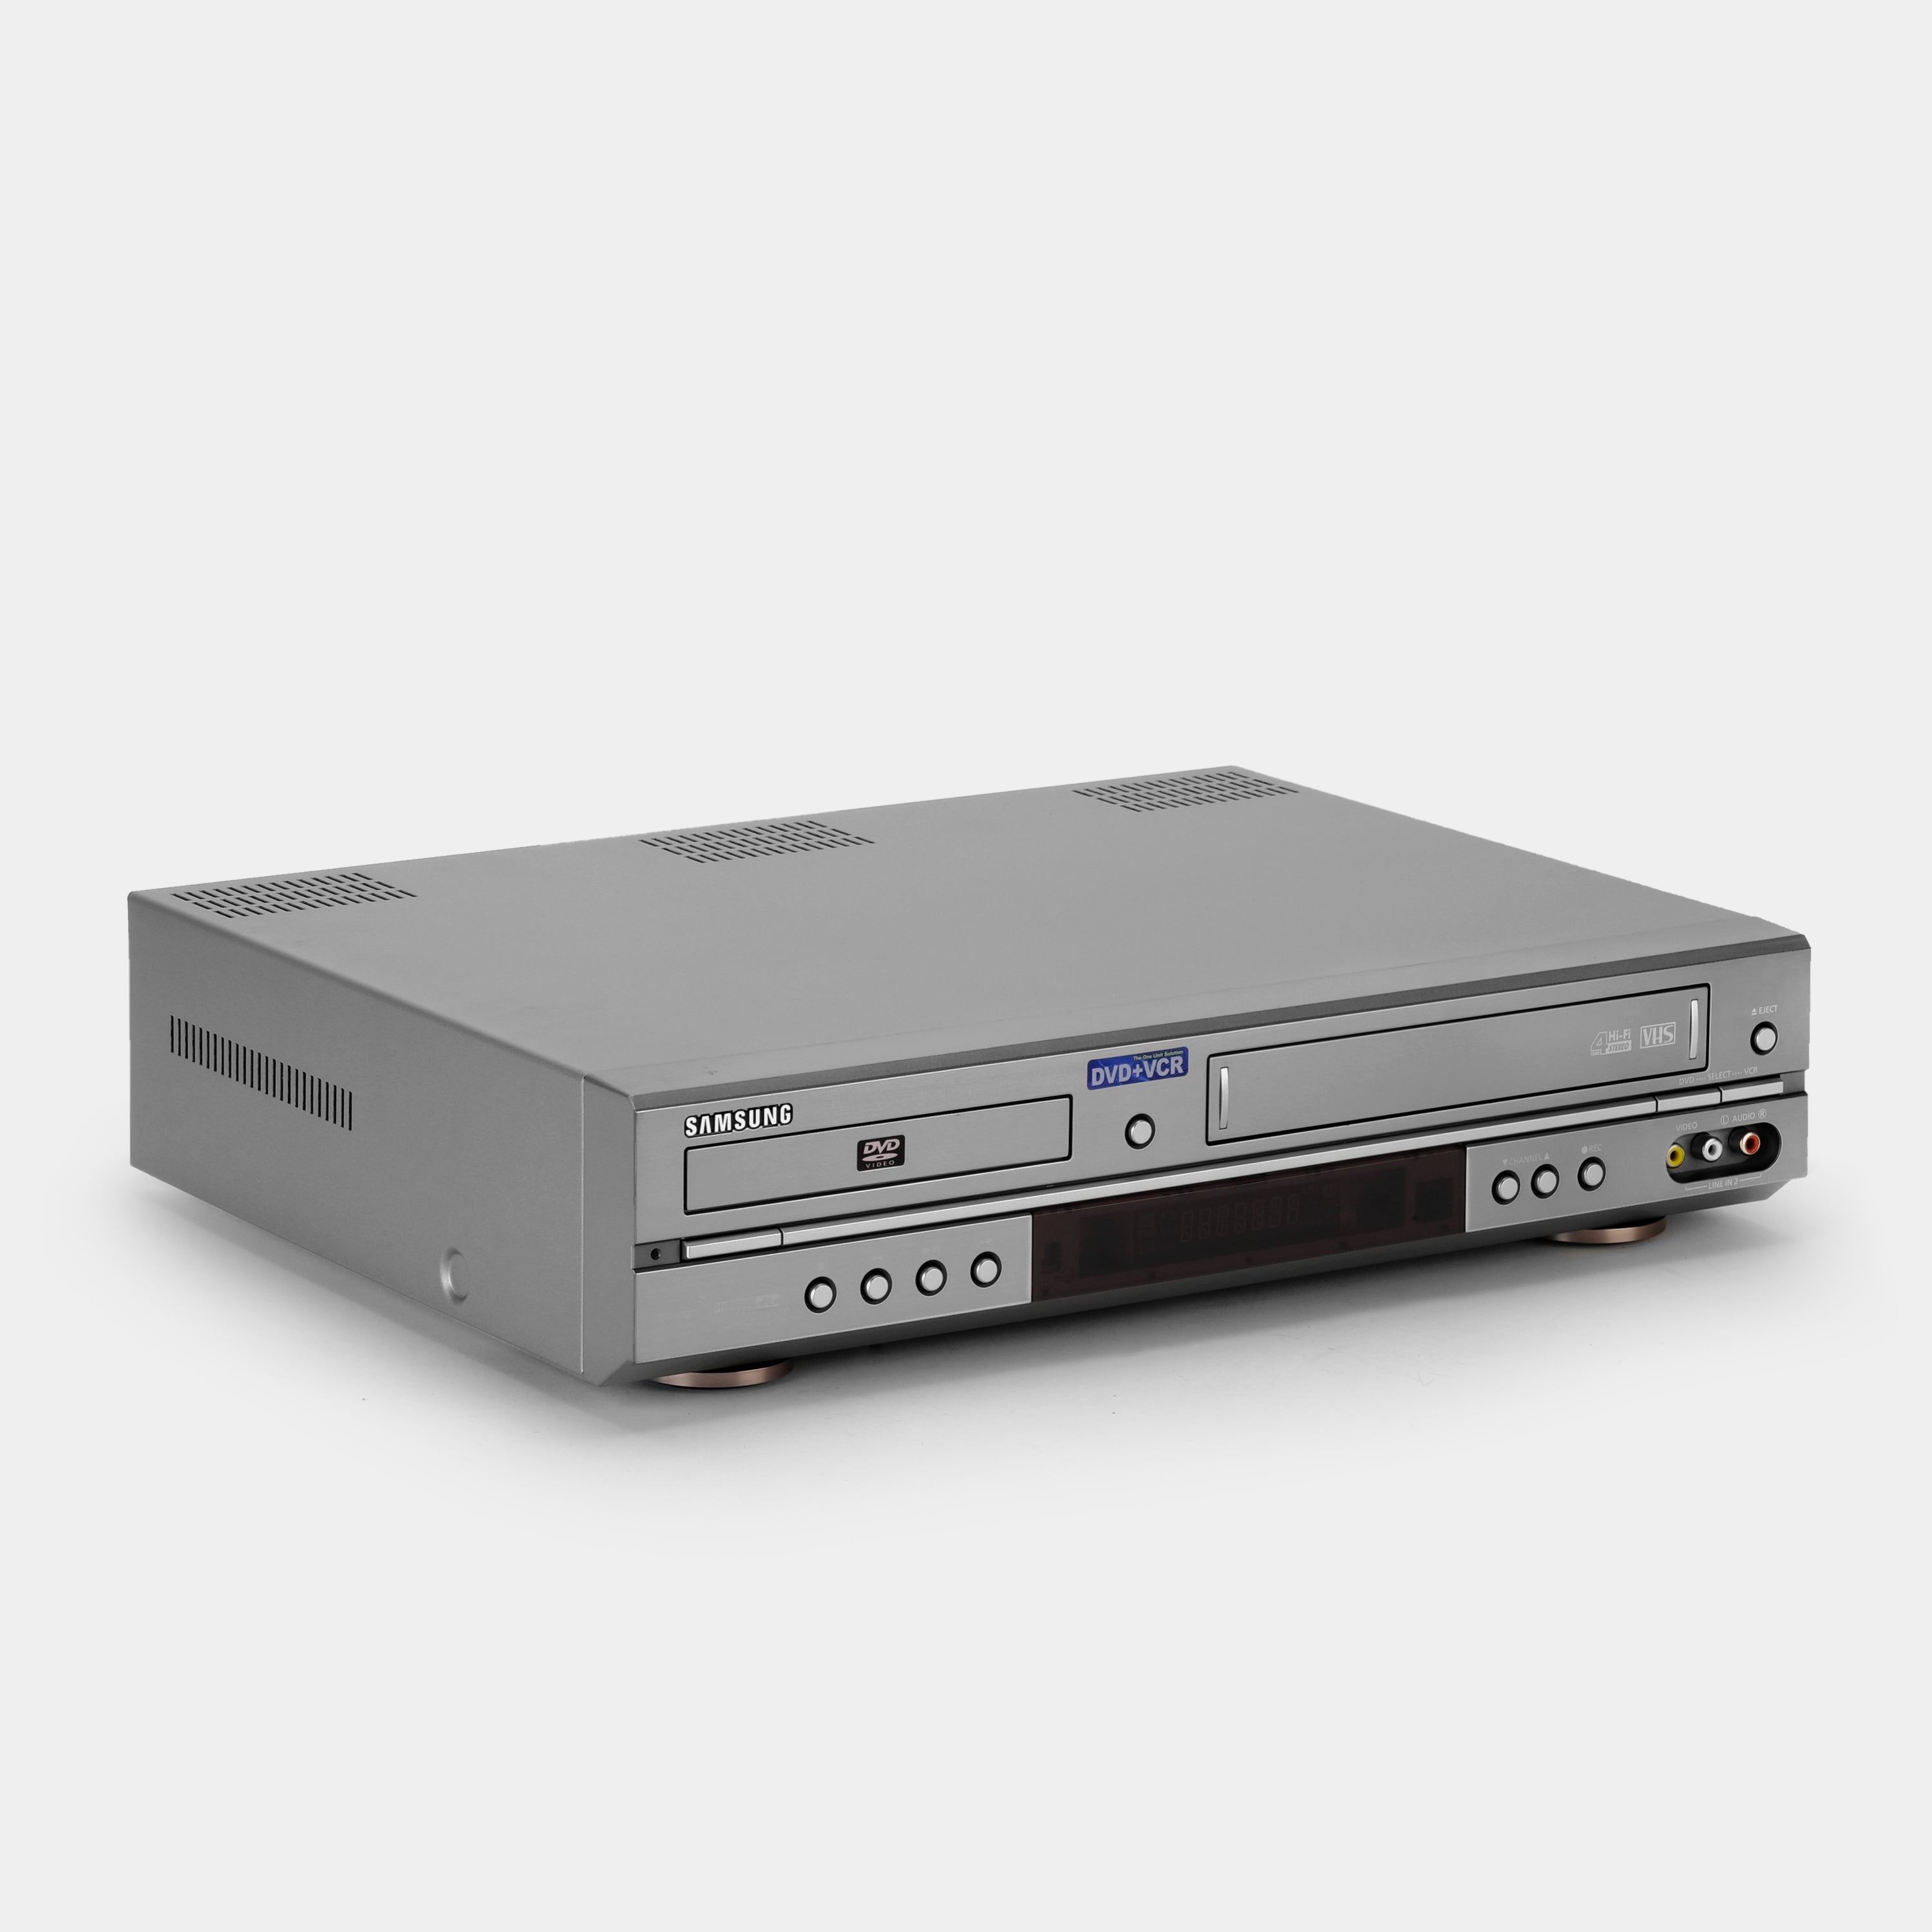 Samsung DVD-V2000 VCR DVD/VHS Dual Deck Player